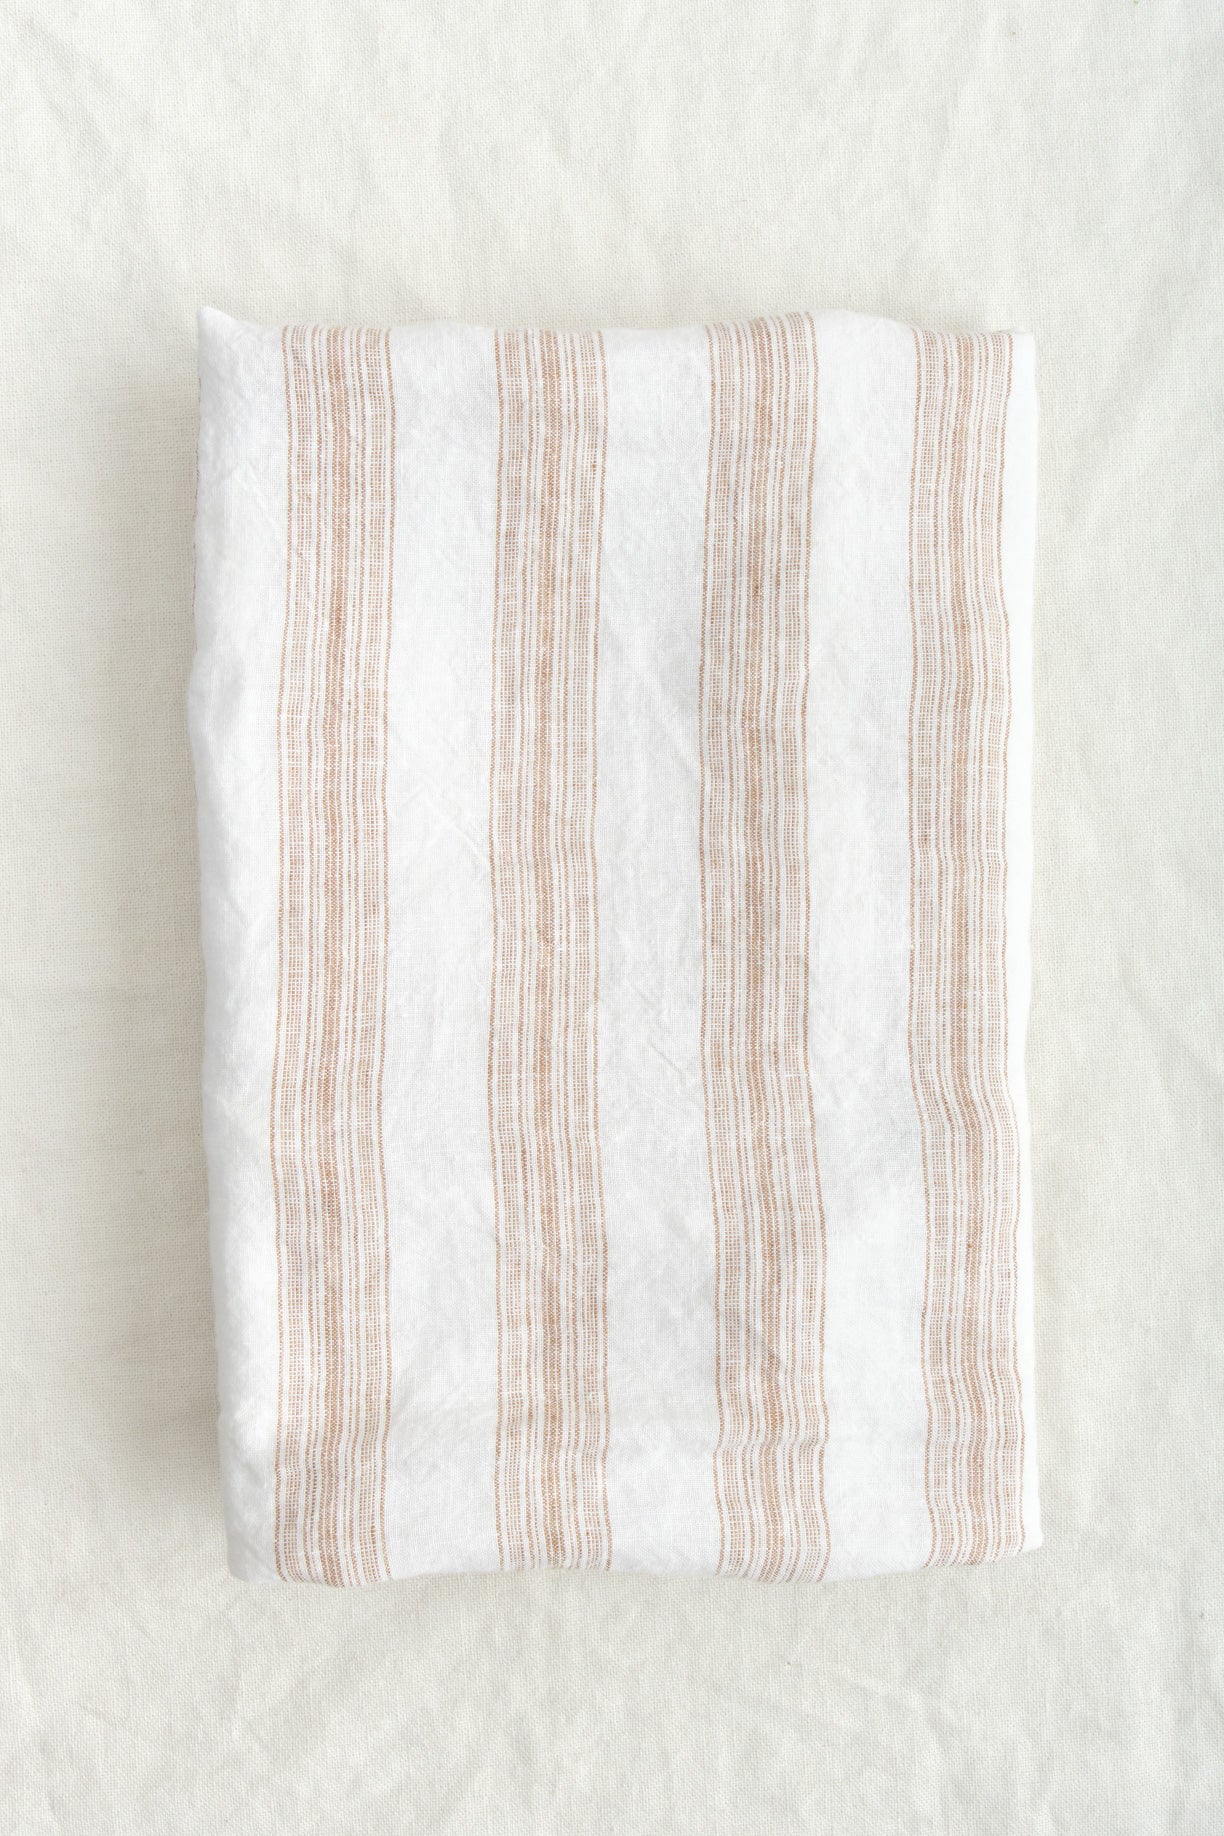 Hale Mercantile Euro Basix Stripe Pillowcase Aryton/Russo